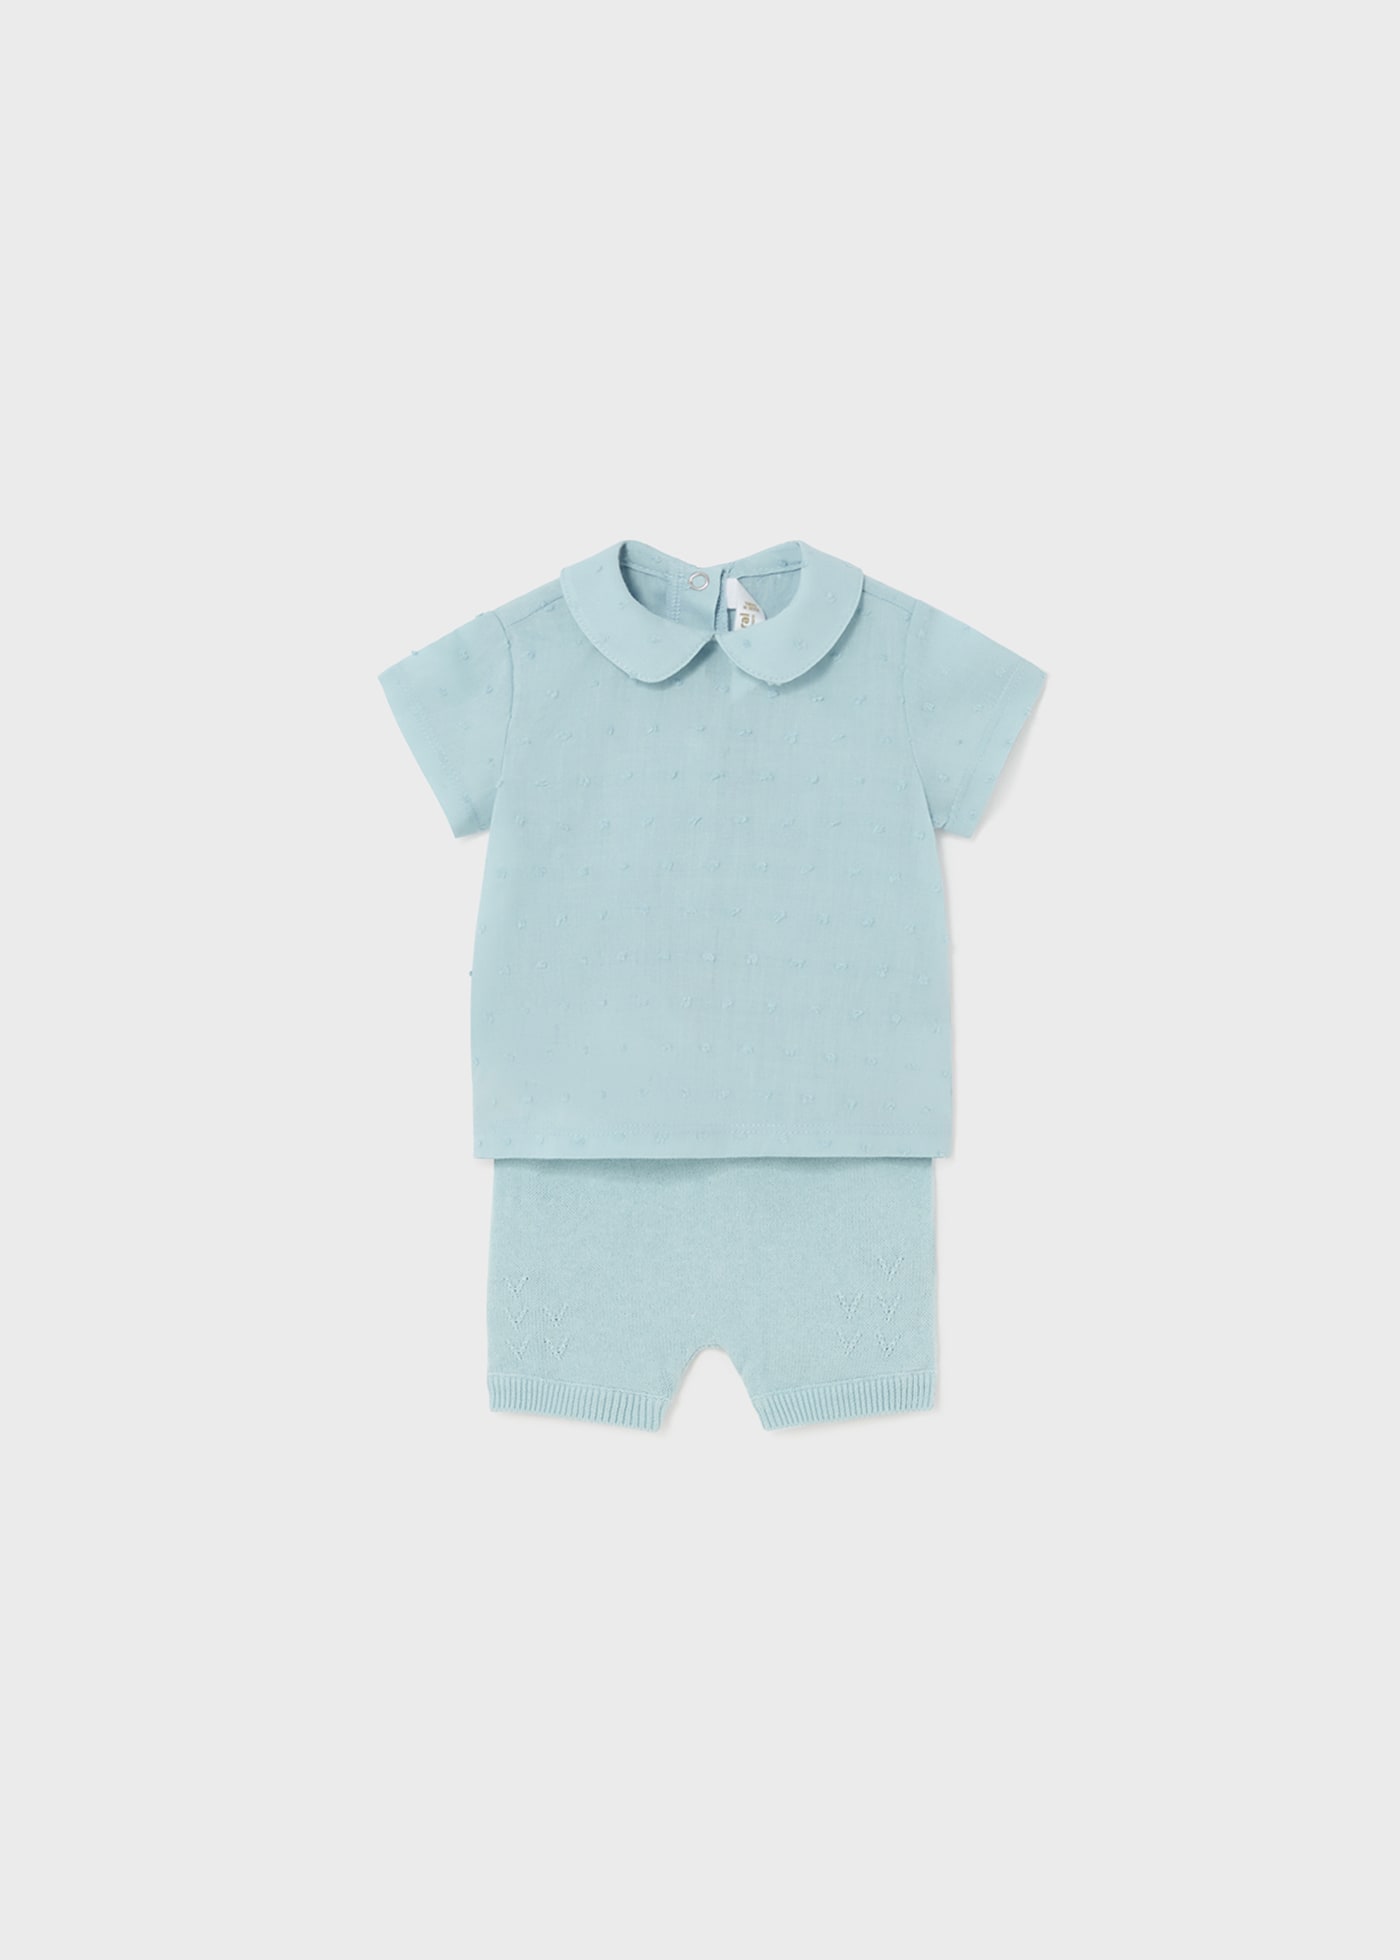 Completo 2 pezzi shorts tricot neonato